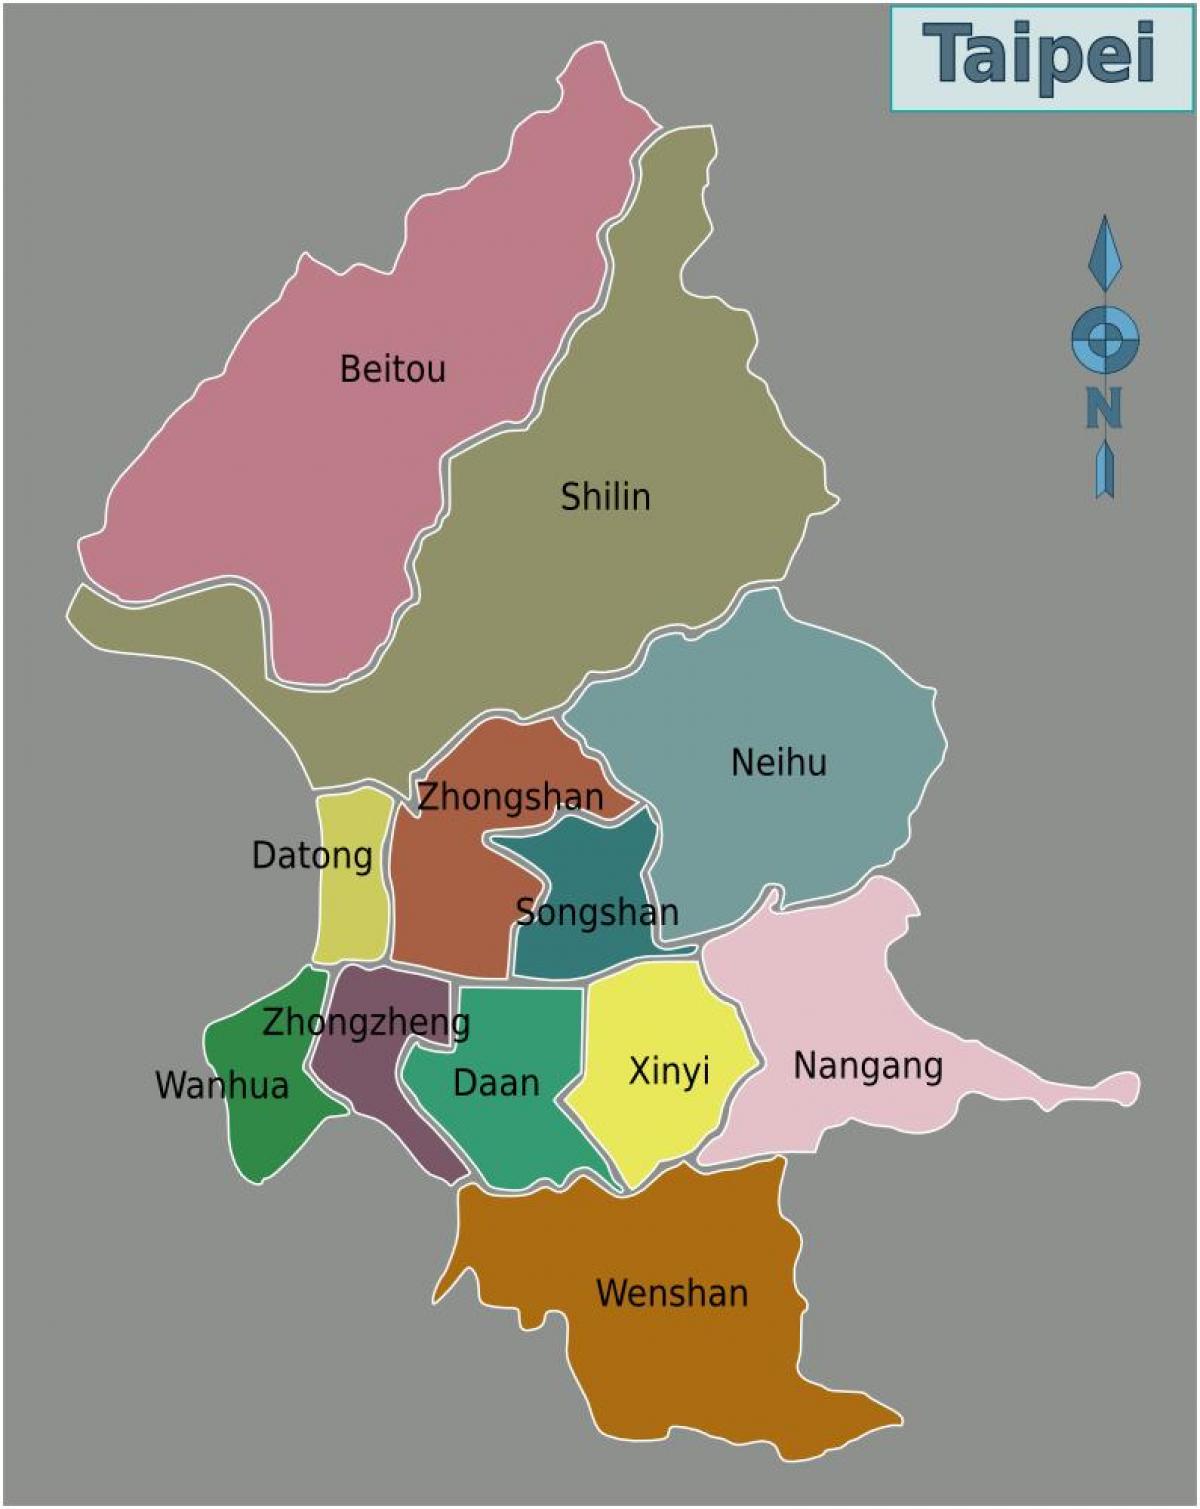 Taipei city district map